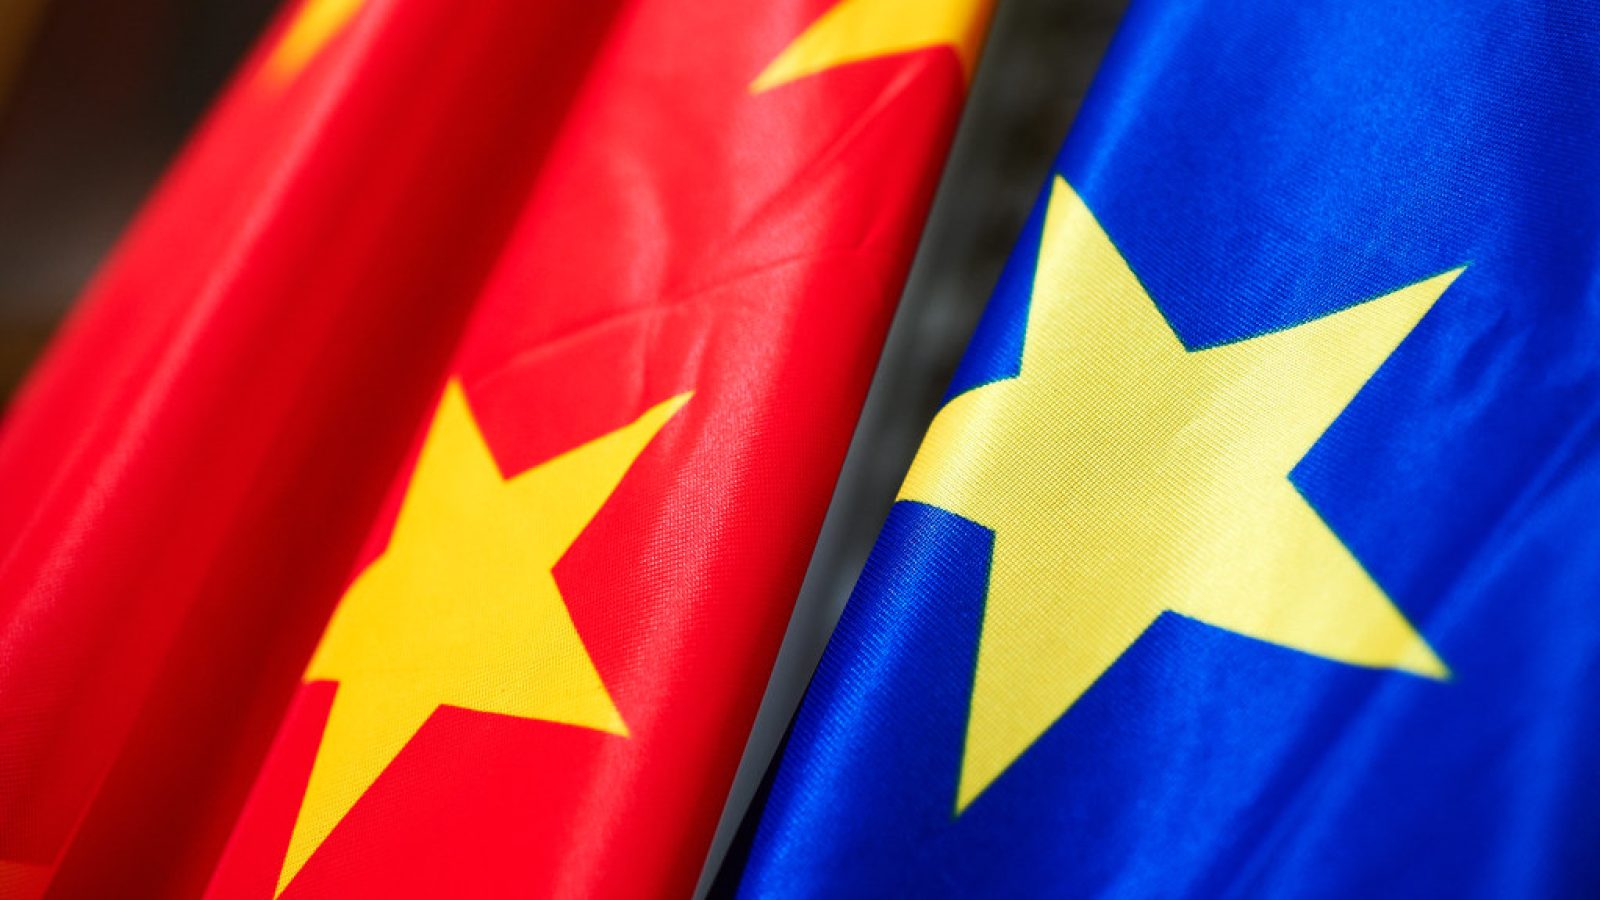 China and EU flags